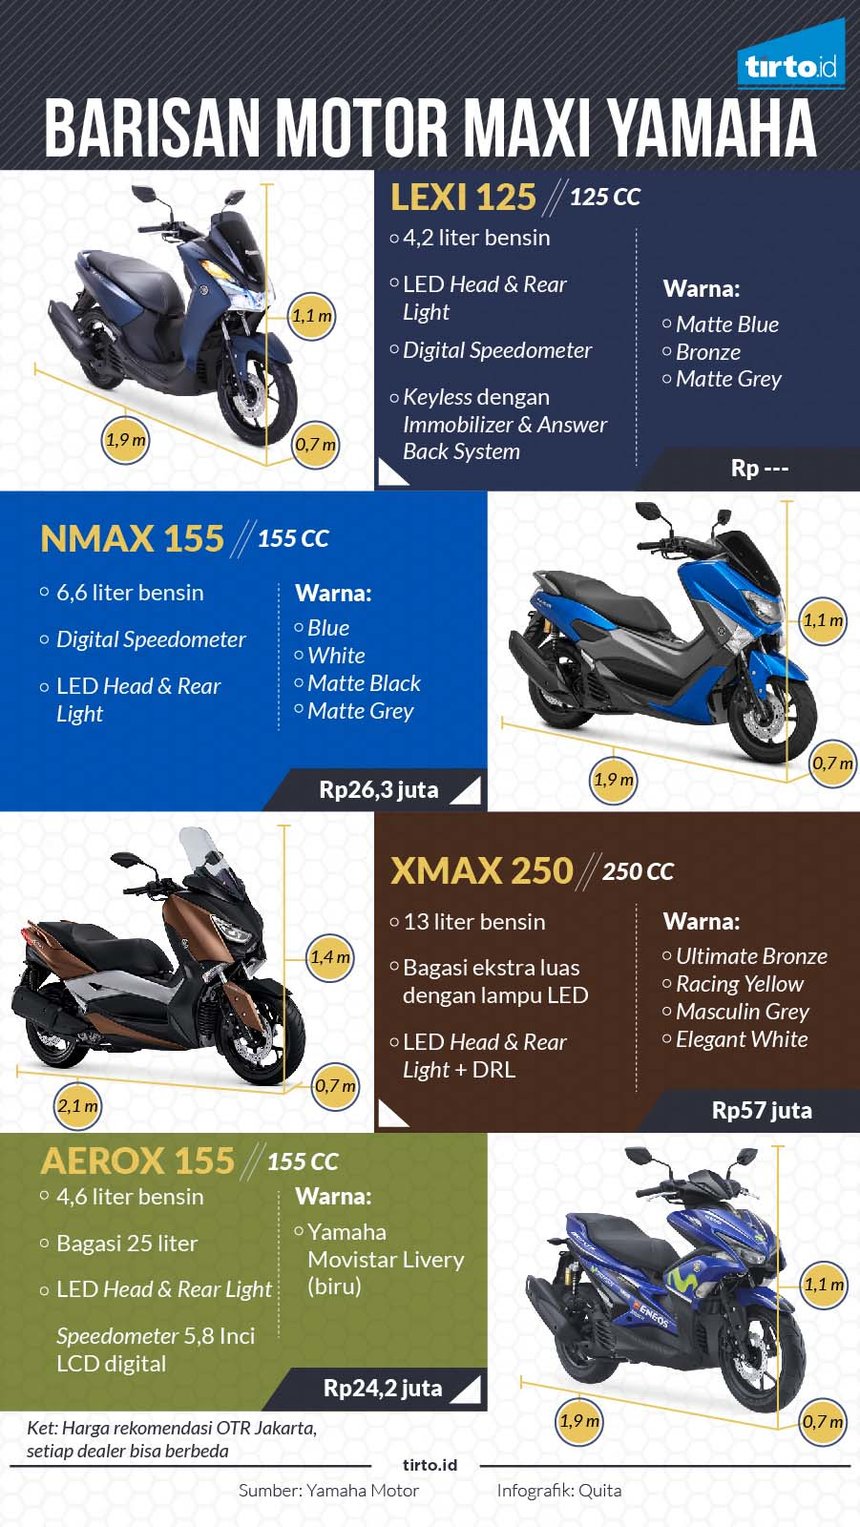 Infografik Barisan Motor Maxi Yamaha